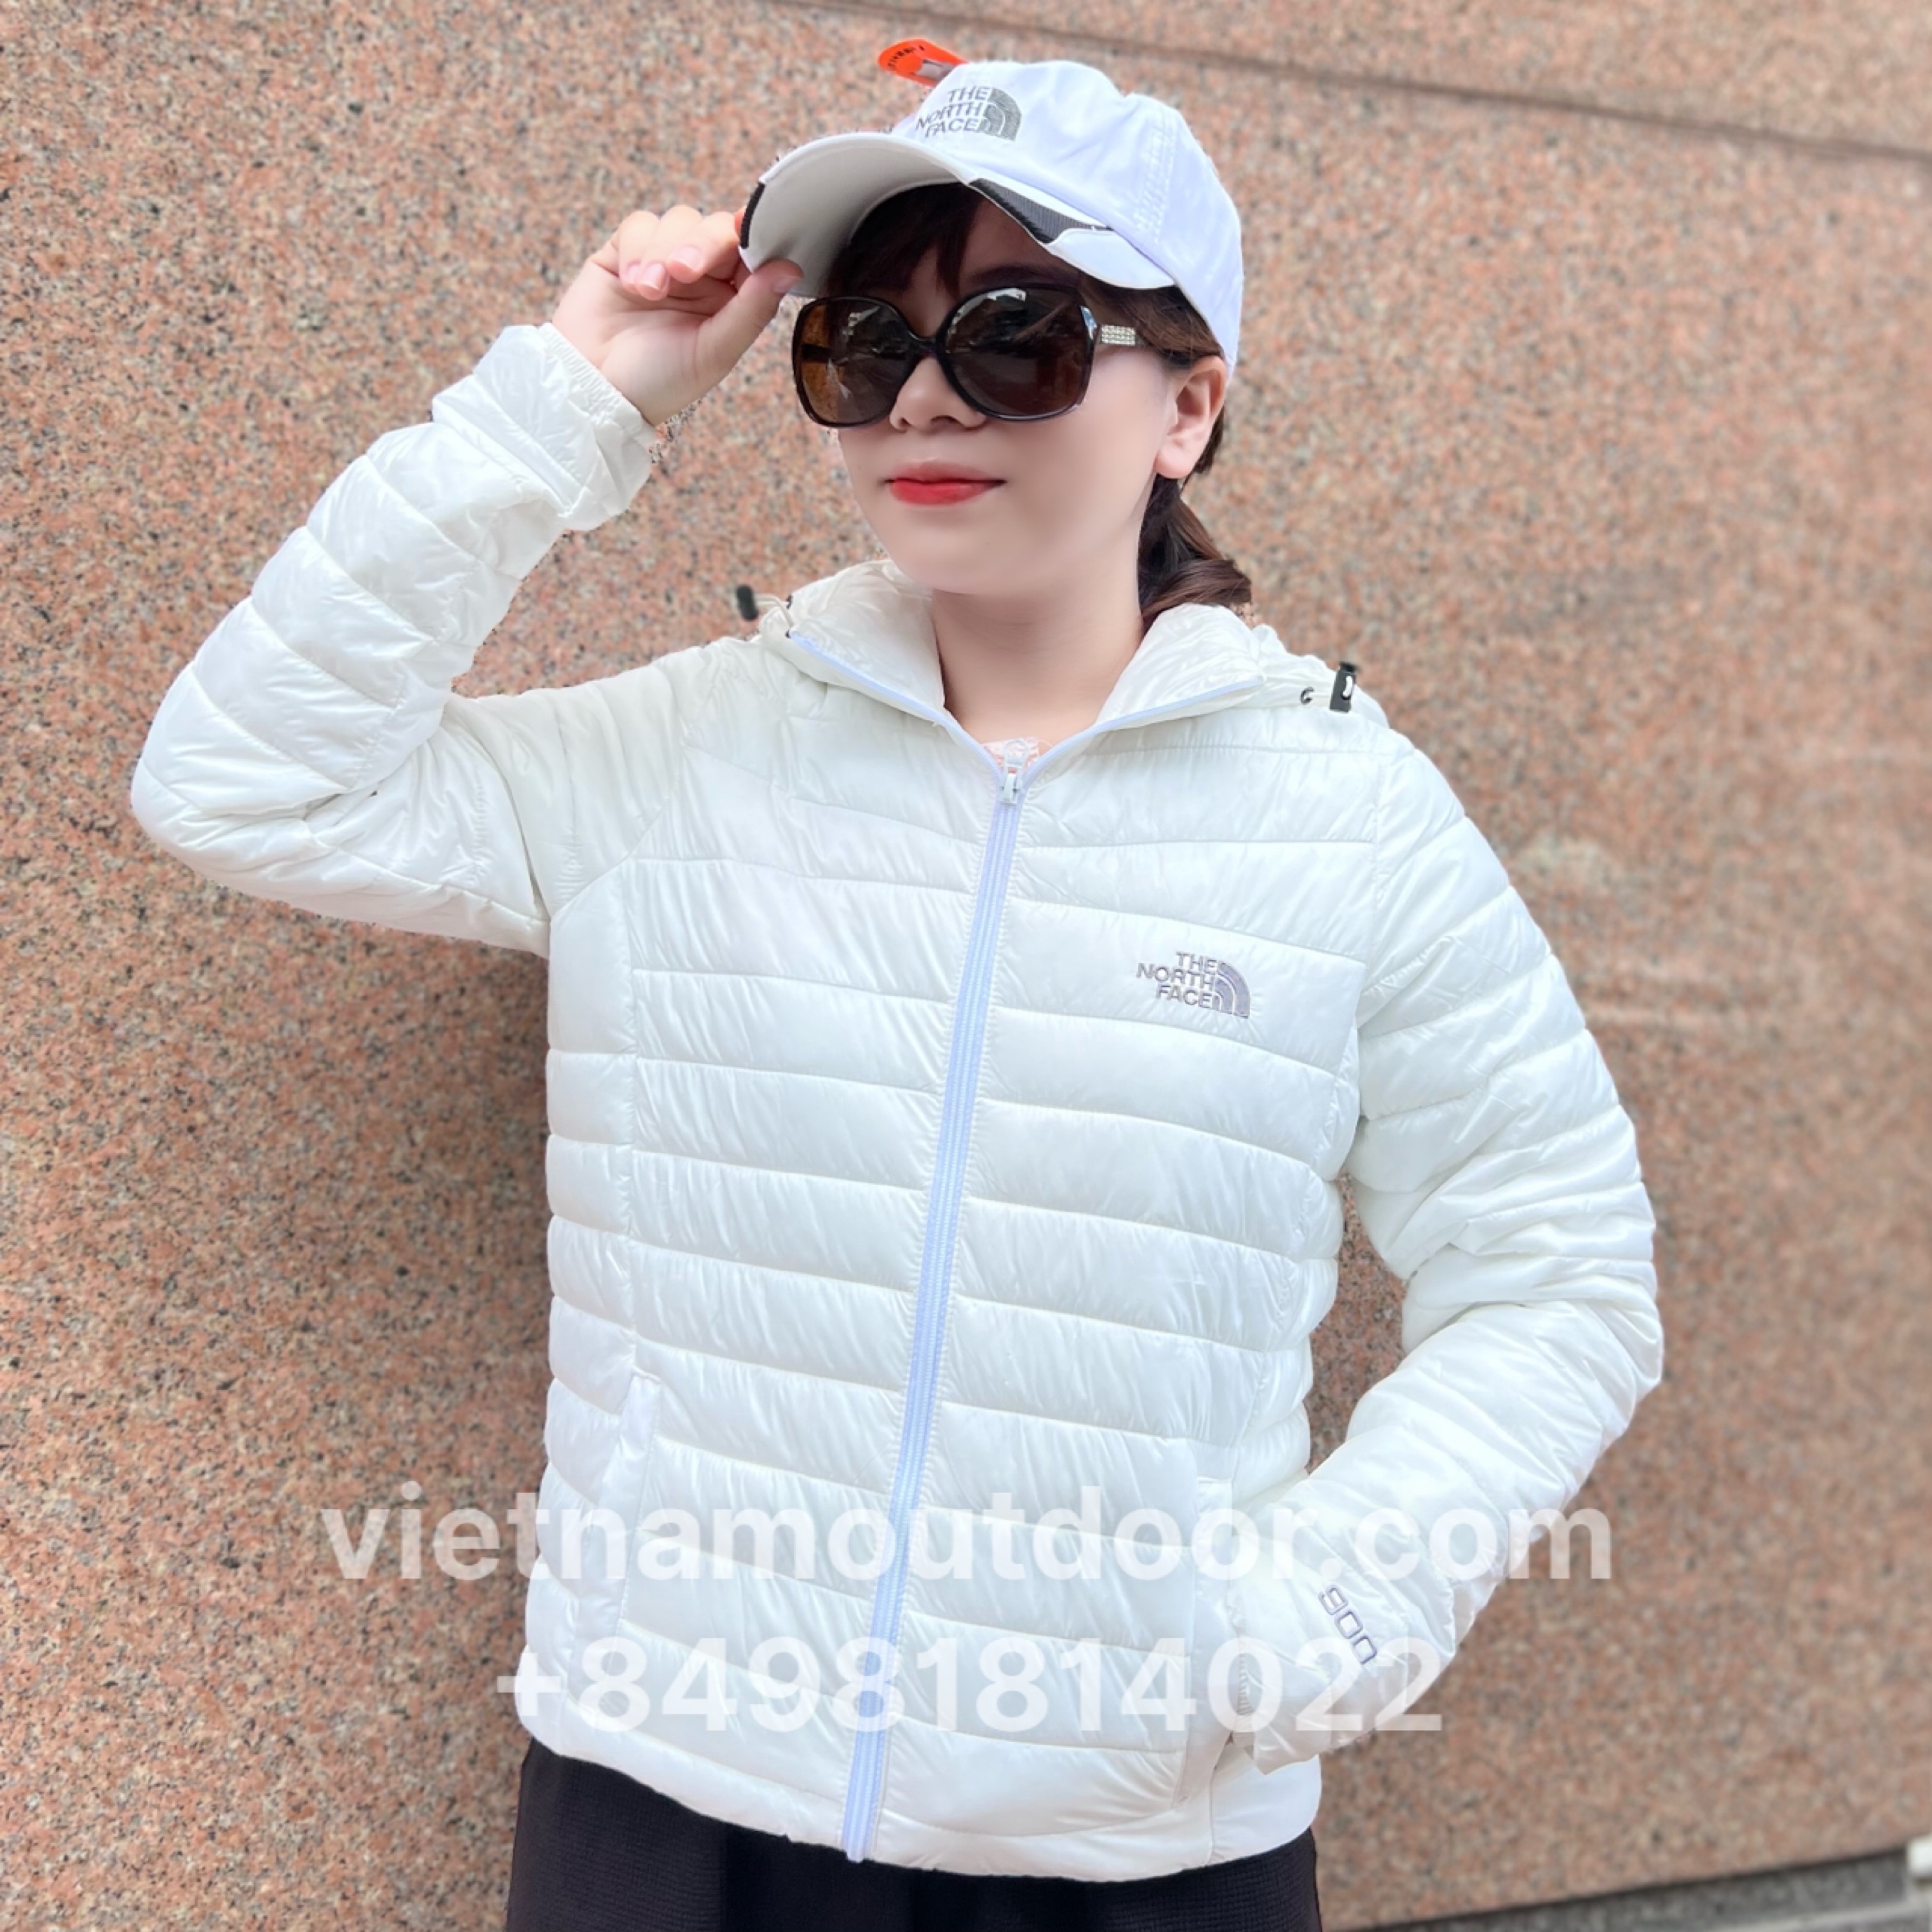 Áo khoác phao nữ chần bông The North Face siêu nhẹ Áo phao nữ phong cách Hàn Quốc có thể cuộn thành túi nhỏ